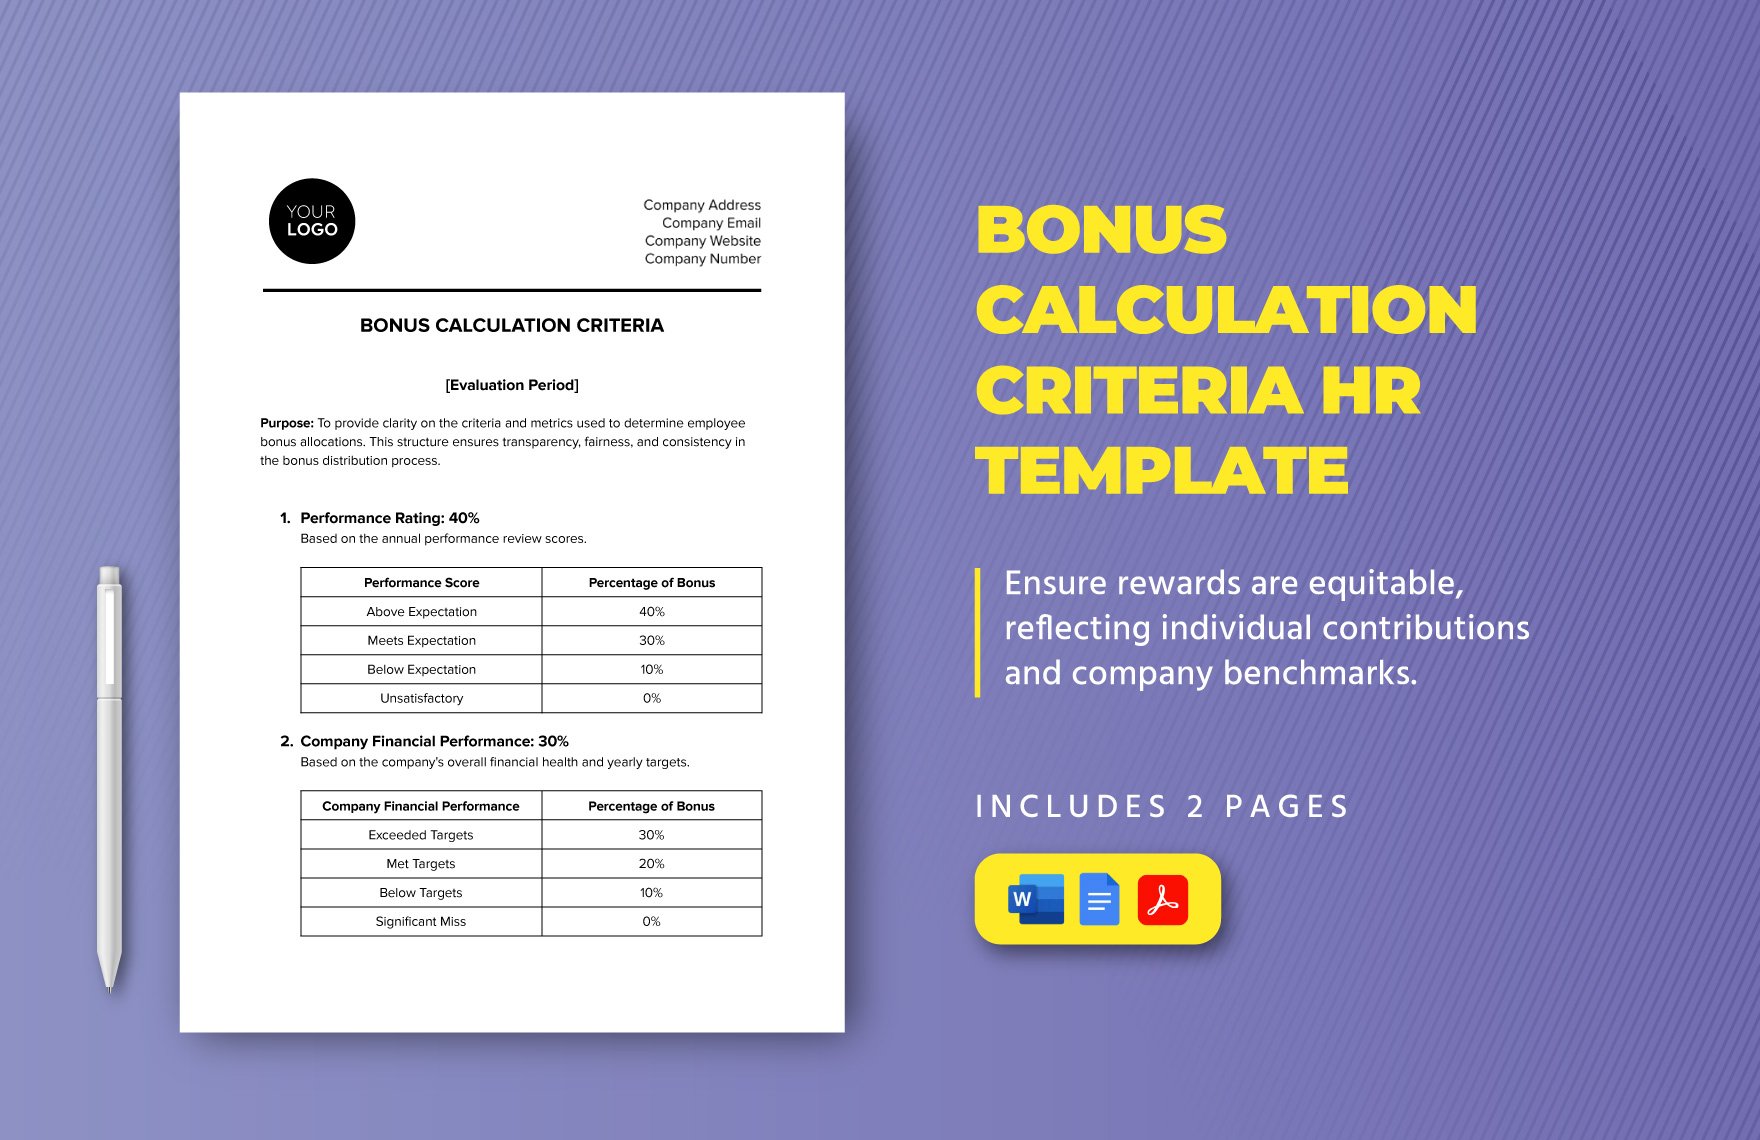 Bonus Calculation Criteria HR Template